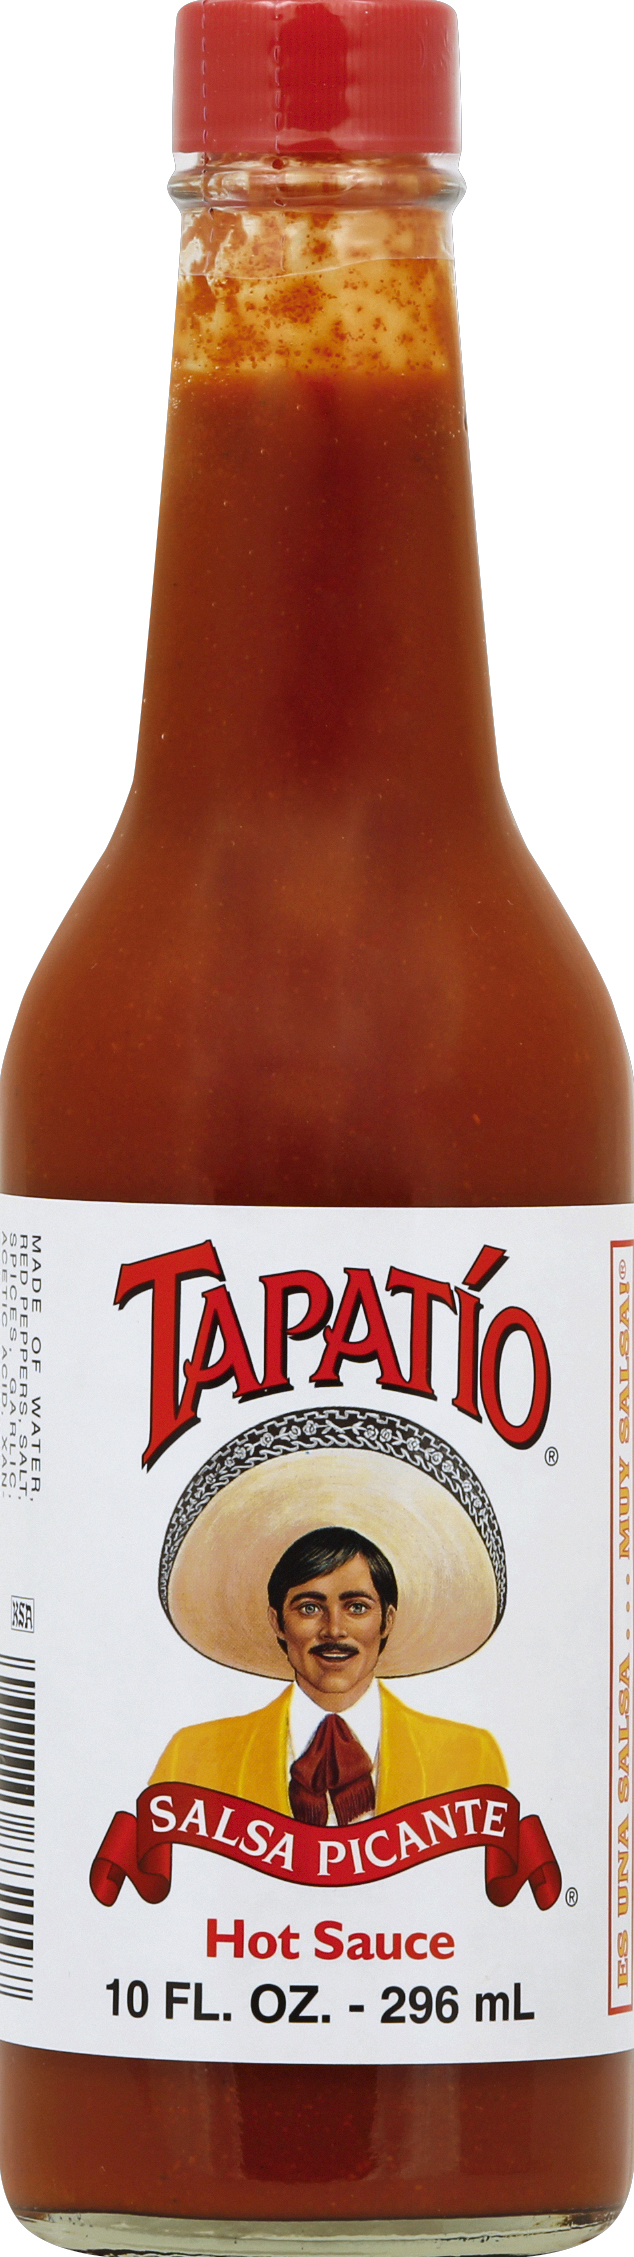 Tapatio Picante Seasoning. 5 oz